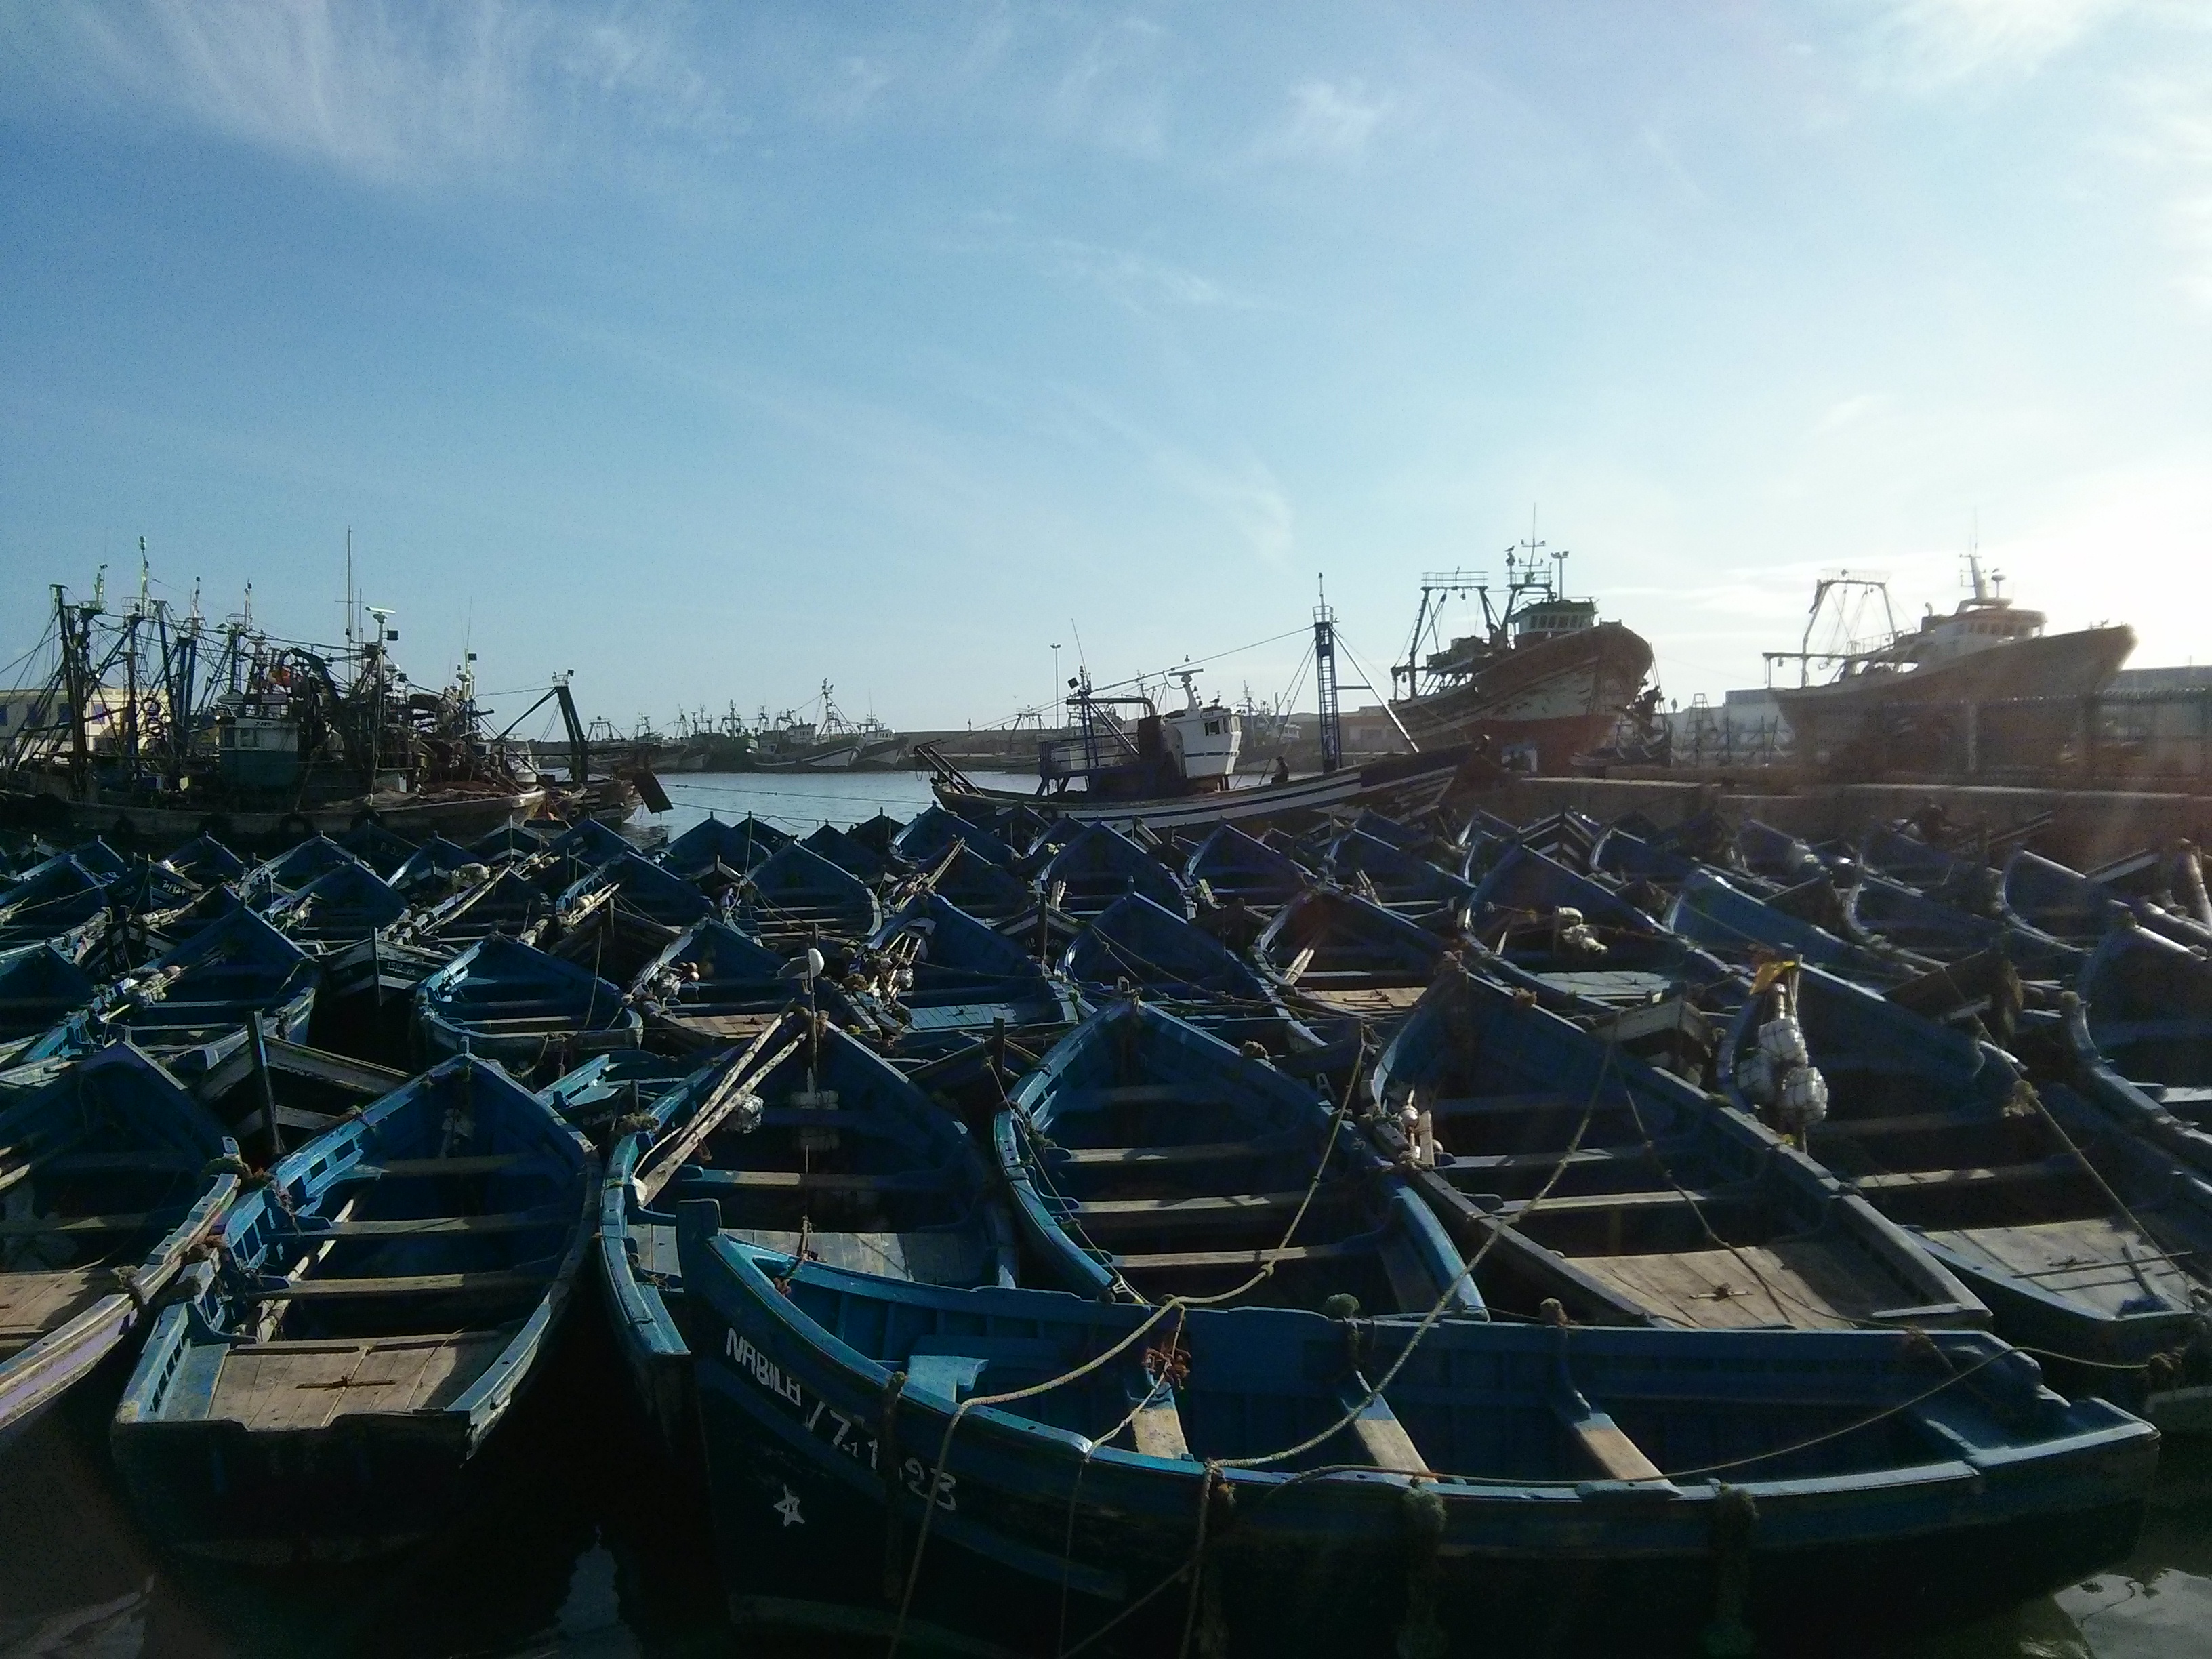 Boat at Essaouira Marocco